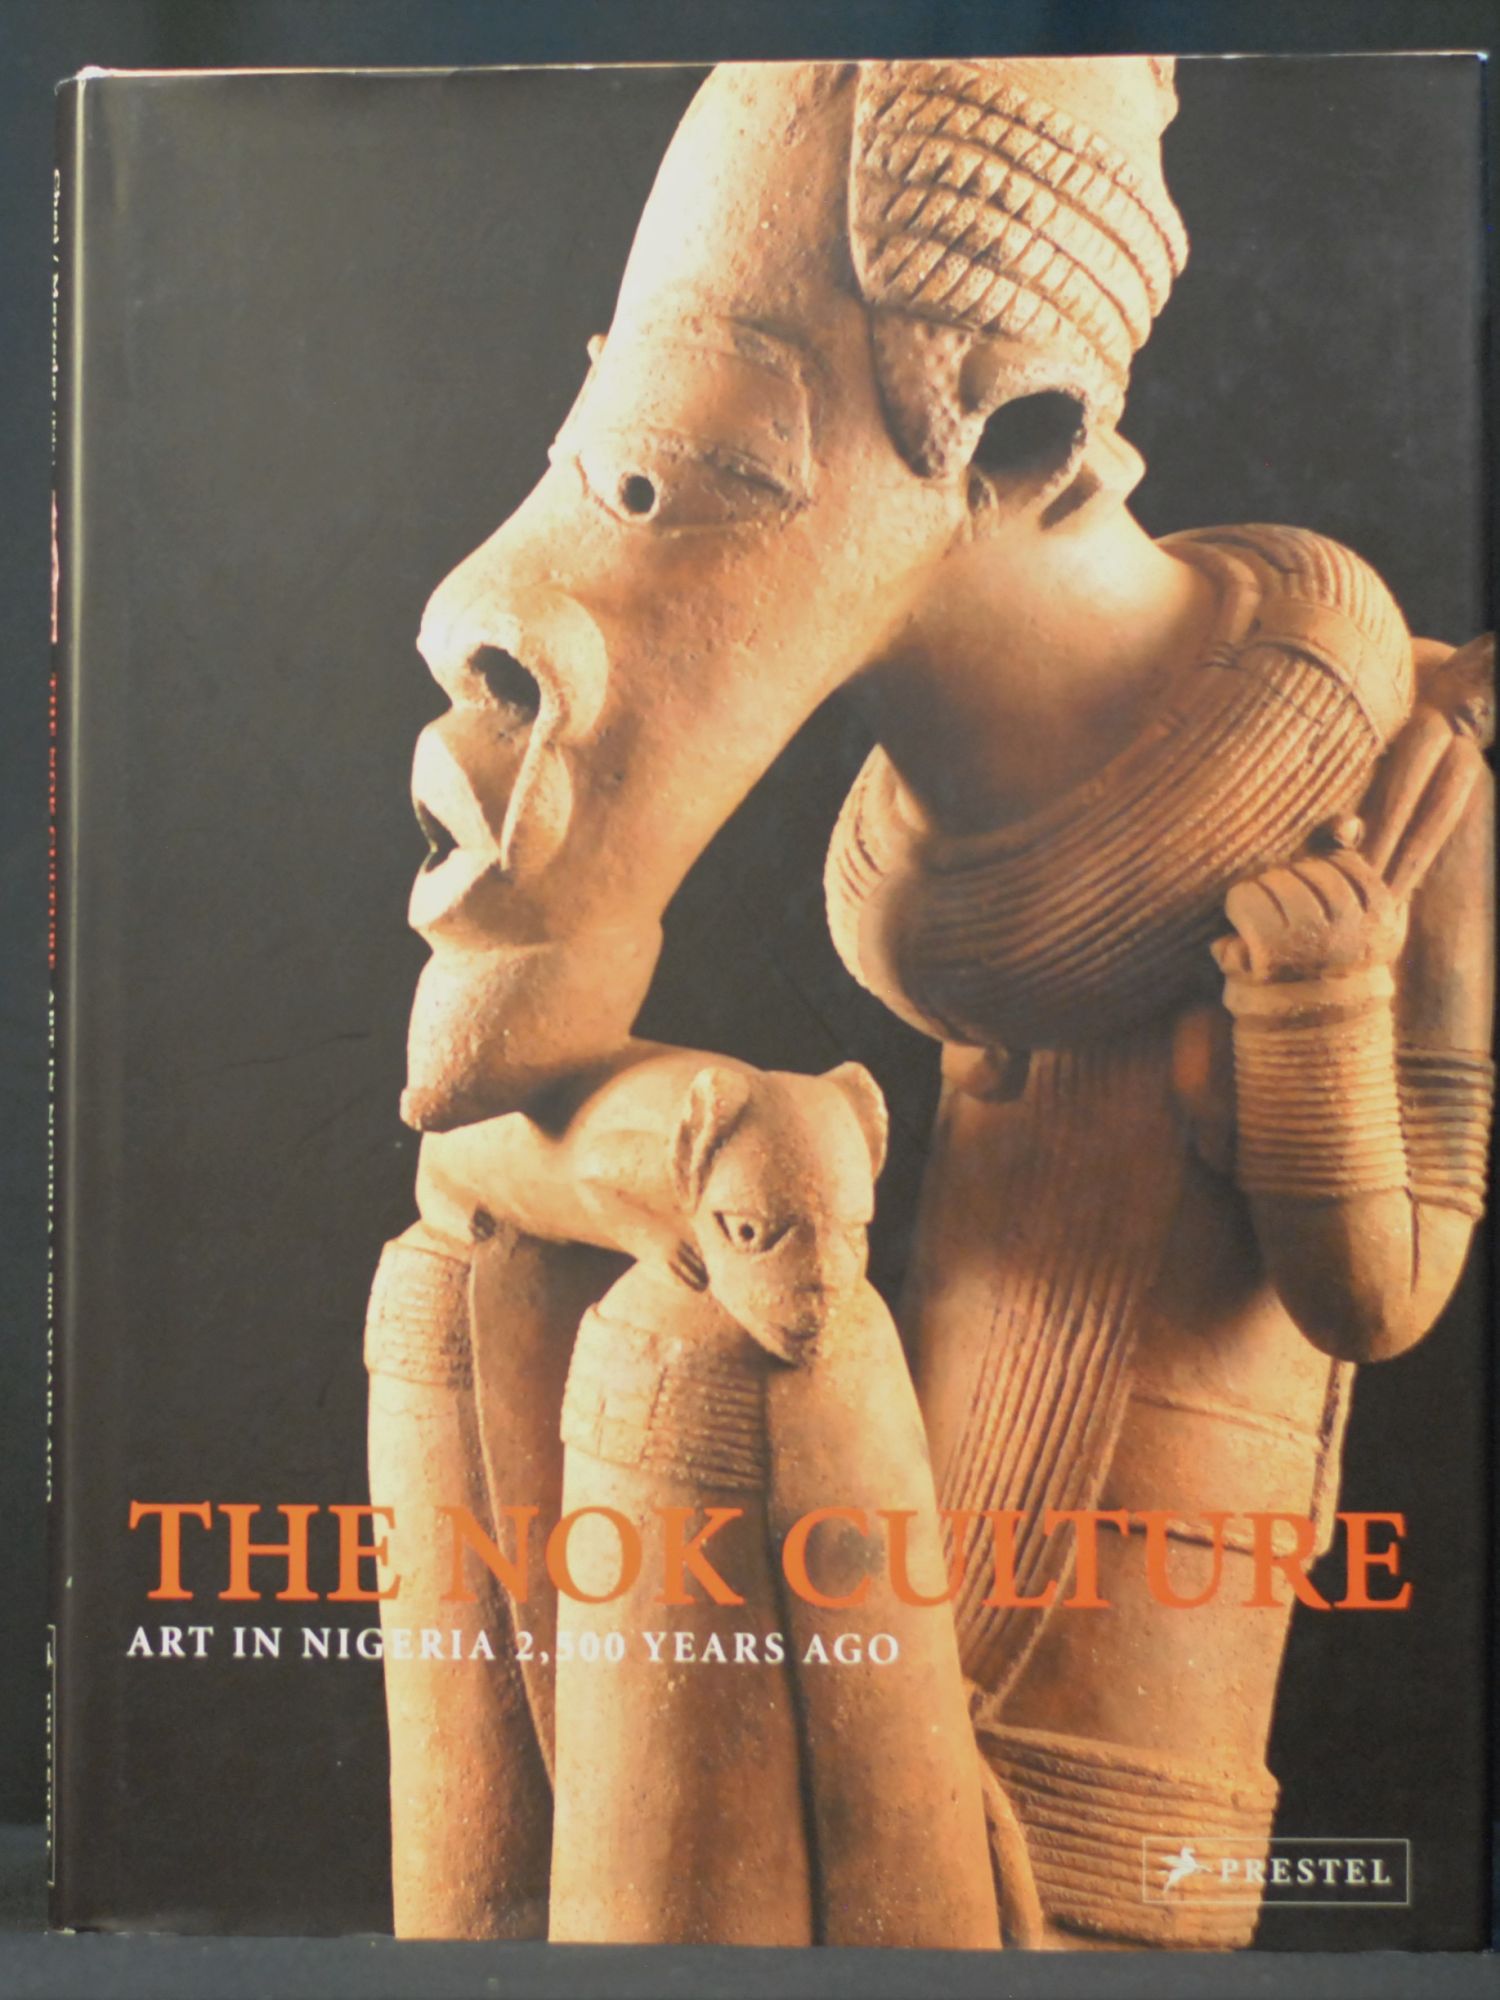 Nok culture sculpture